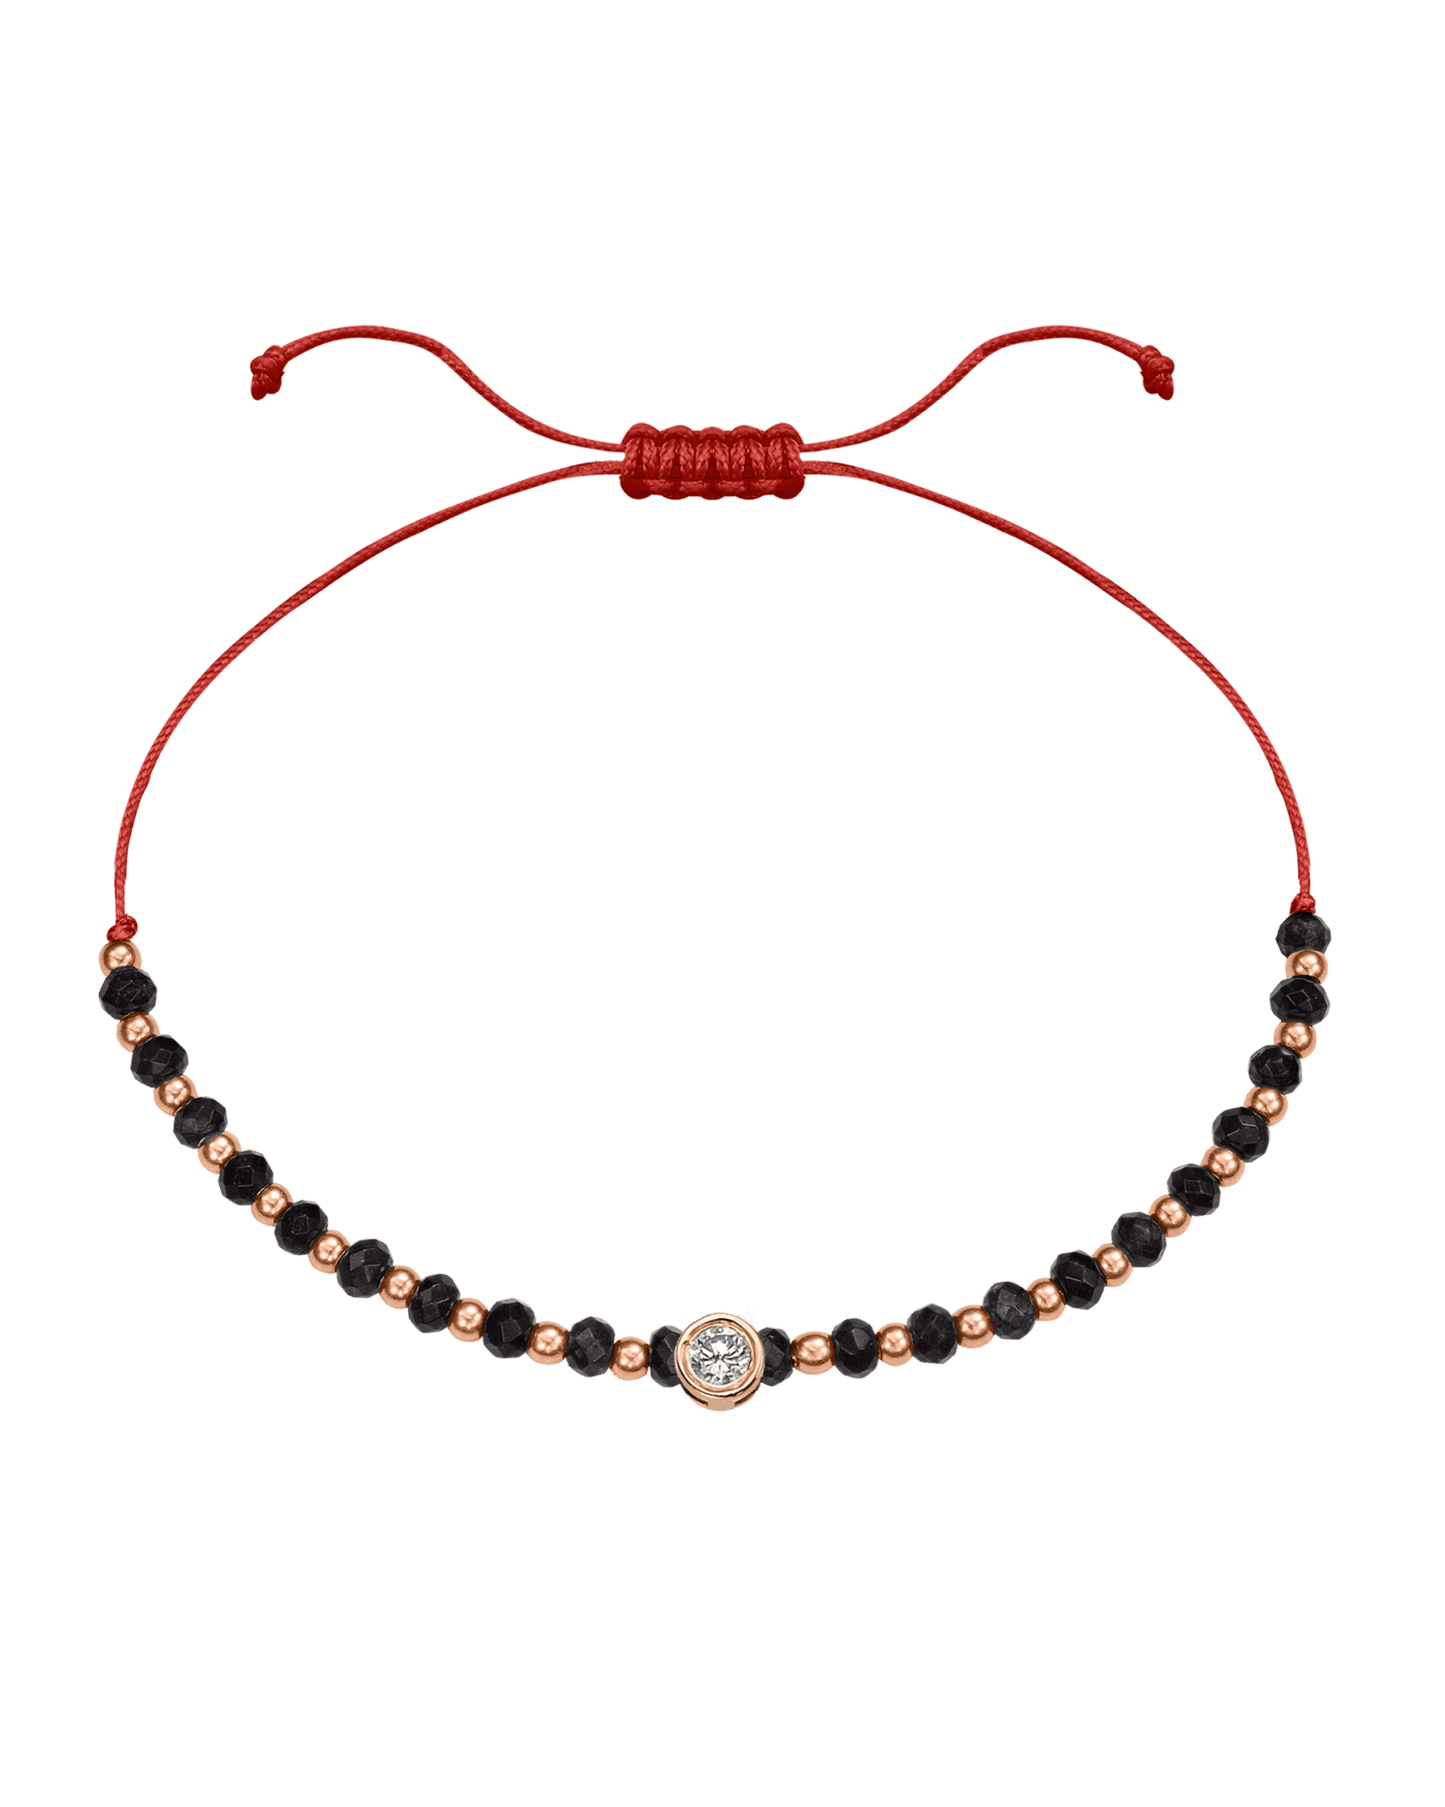 Black Onyx Gemstone String of Love Bracelet for Protection - 14K Rose Gold Bracelets 14K Solid Gold Red Large: 0.1ct 